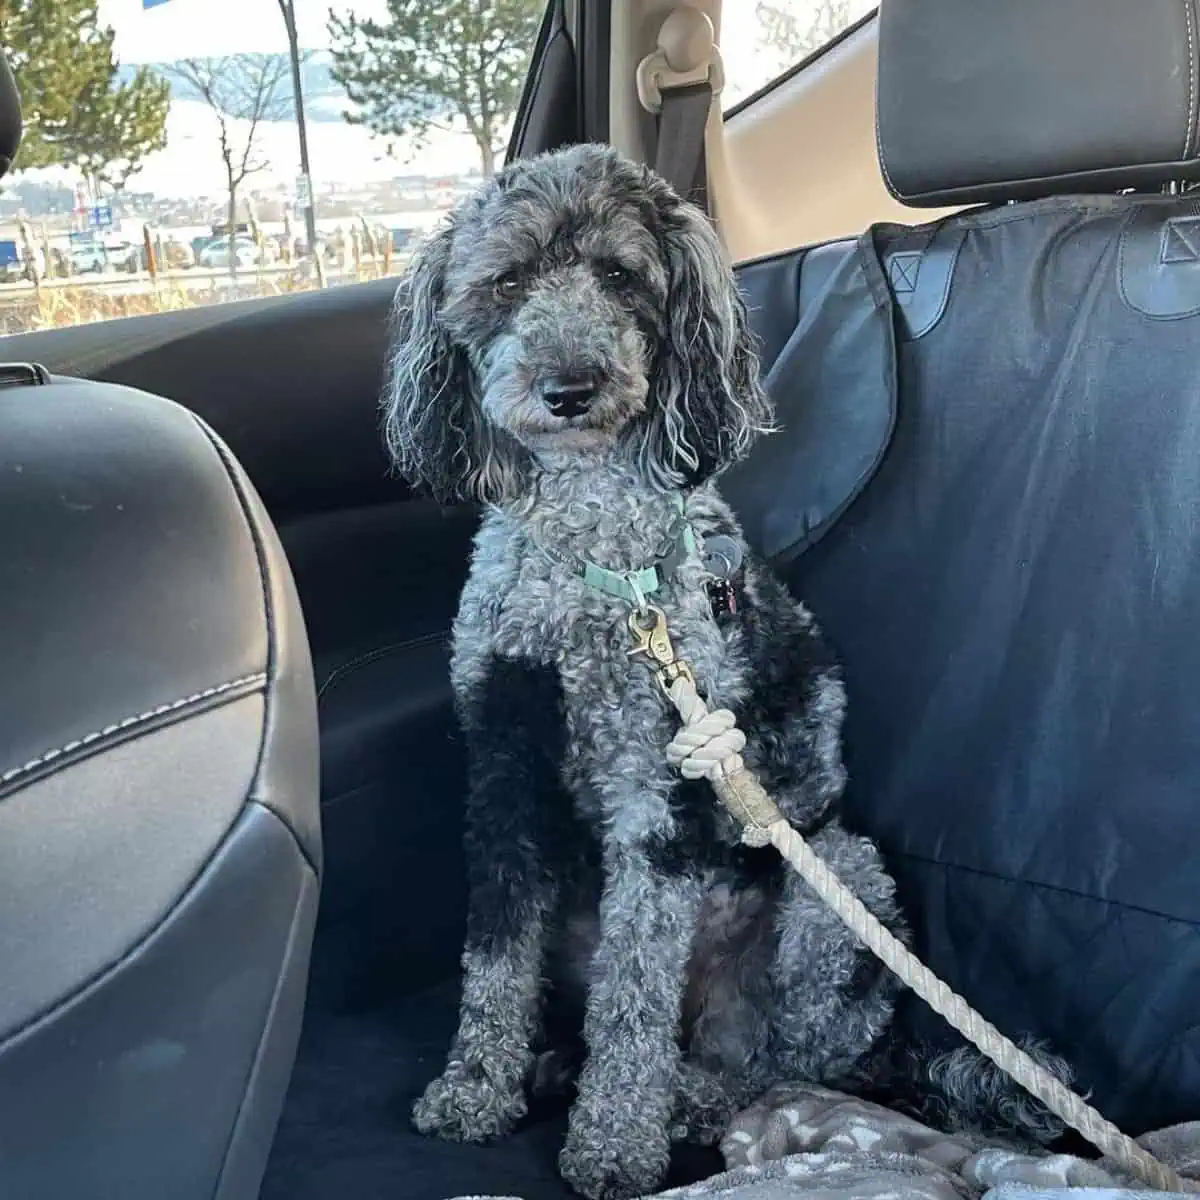 Poodle left inside the car